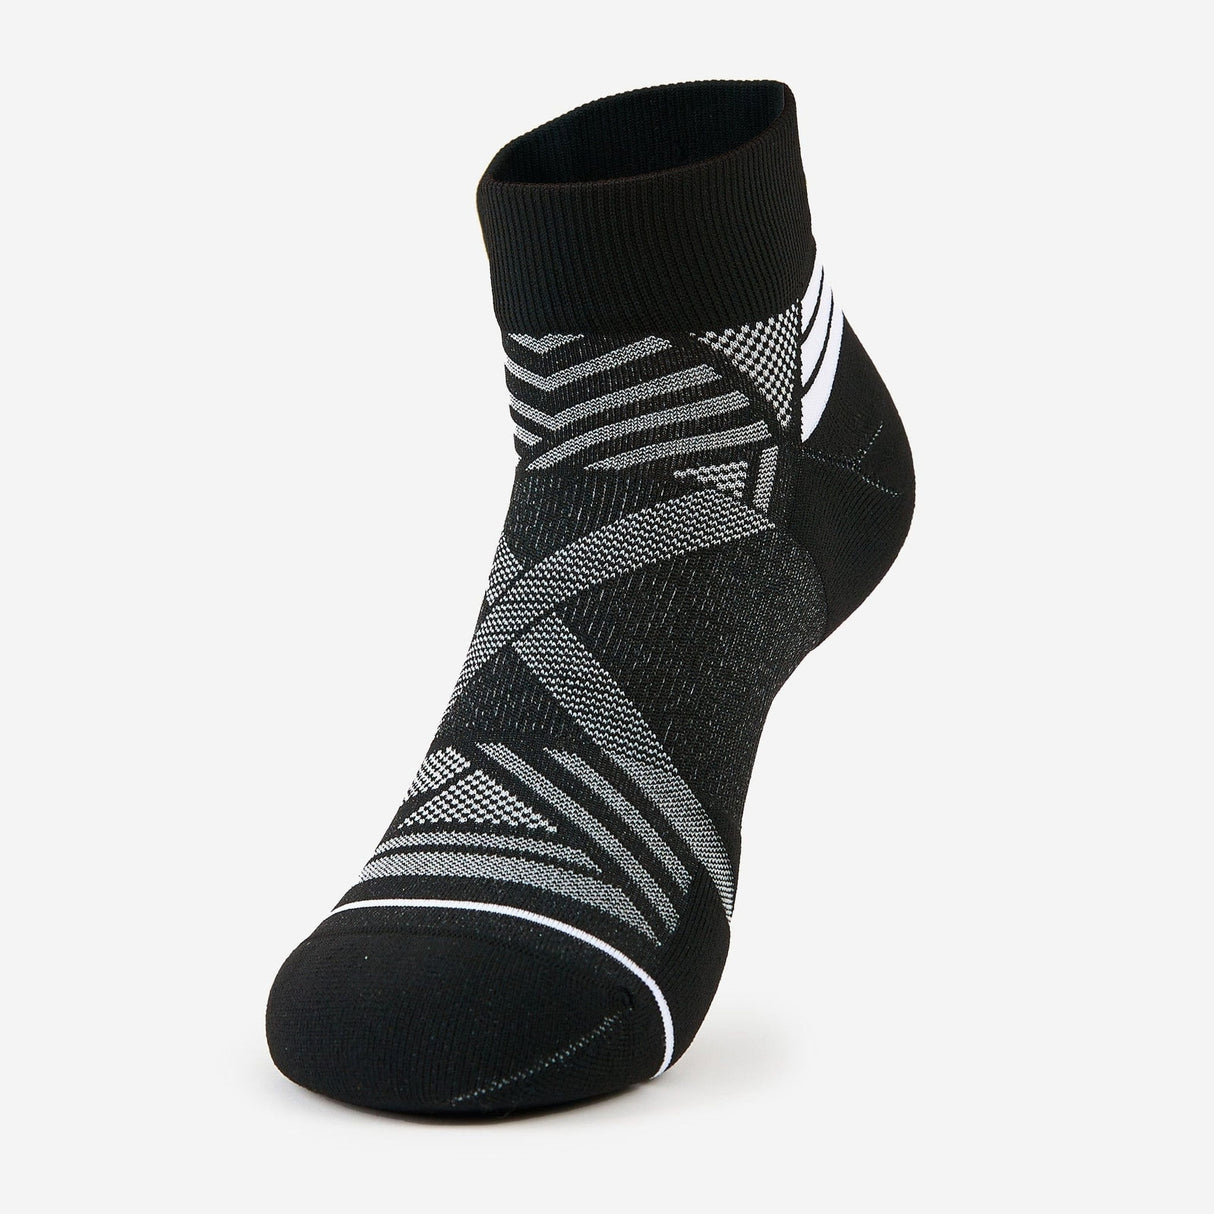 Thorlo Experia X Speed Performance Cushion Ankle Socks  -  Medium / Black